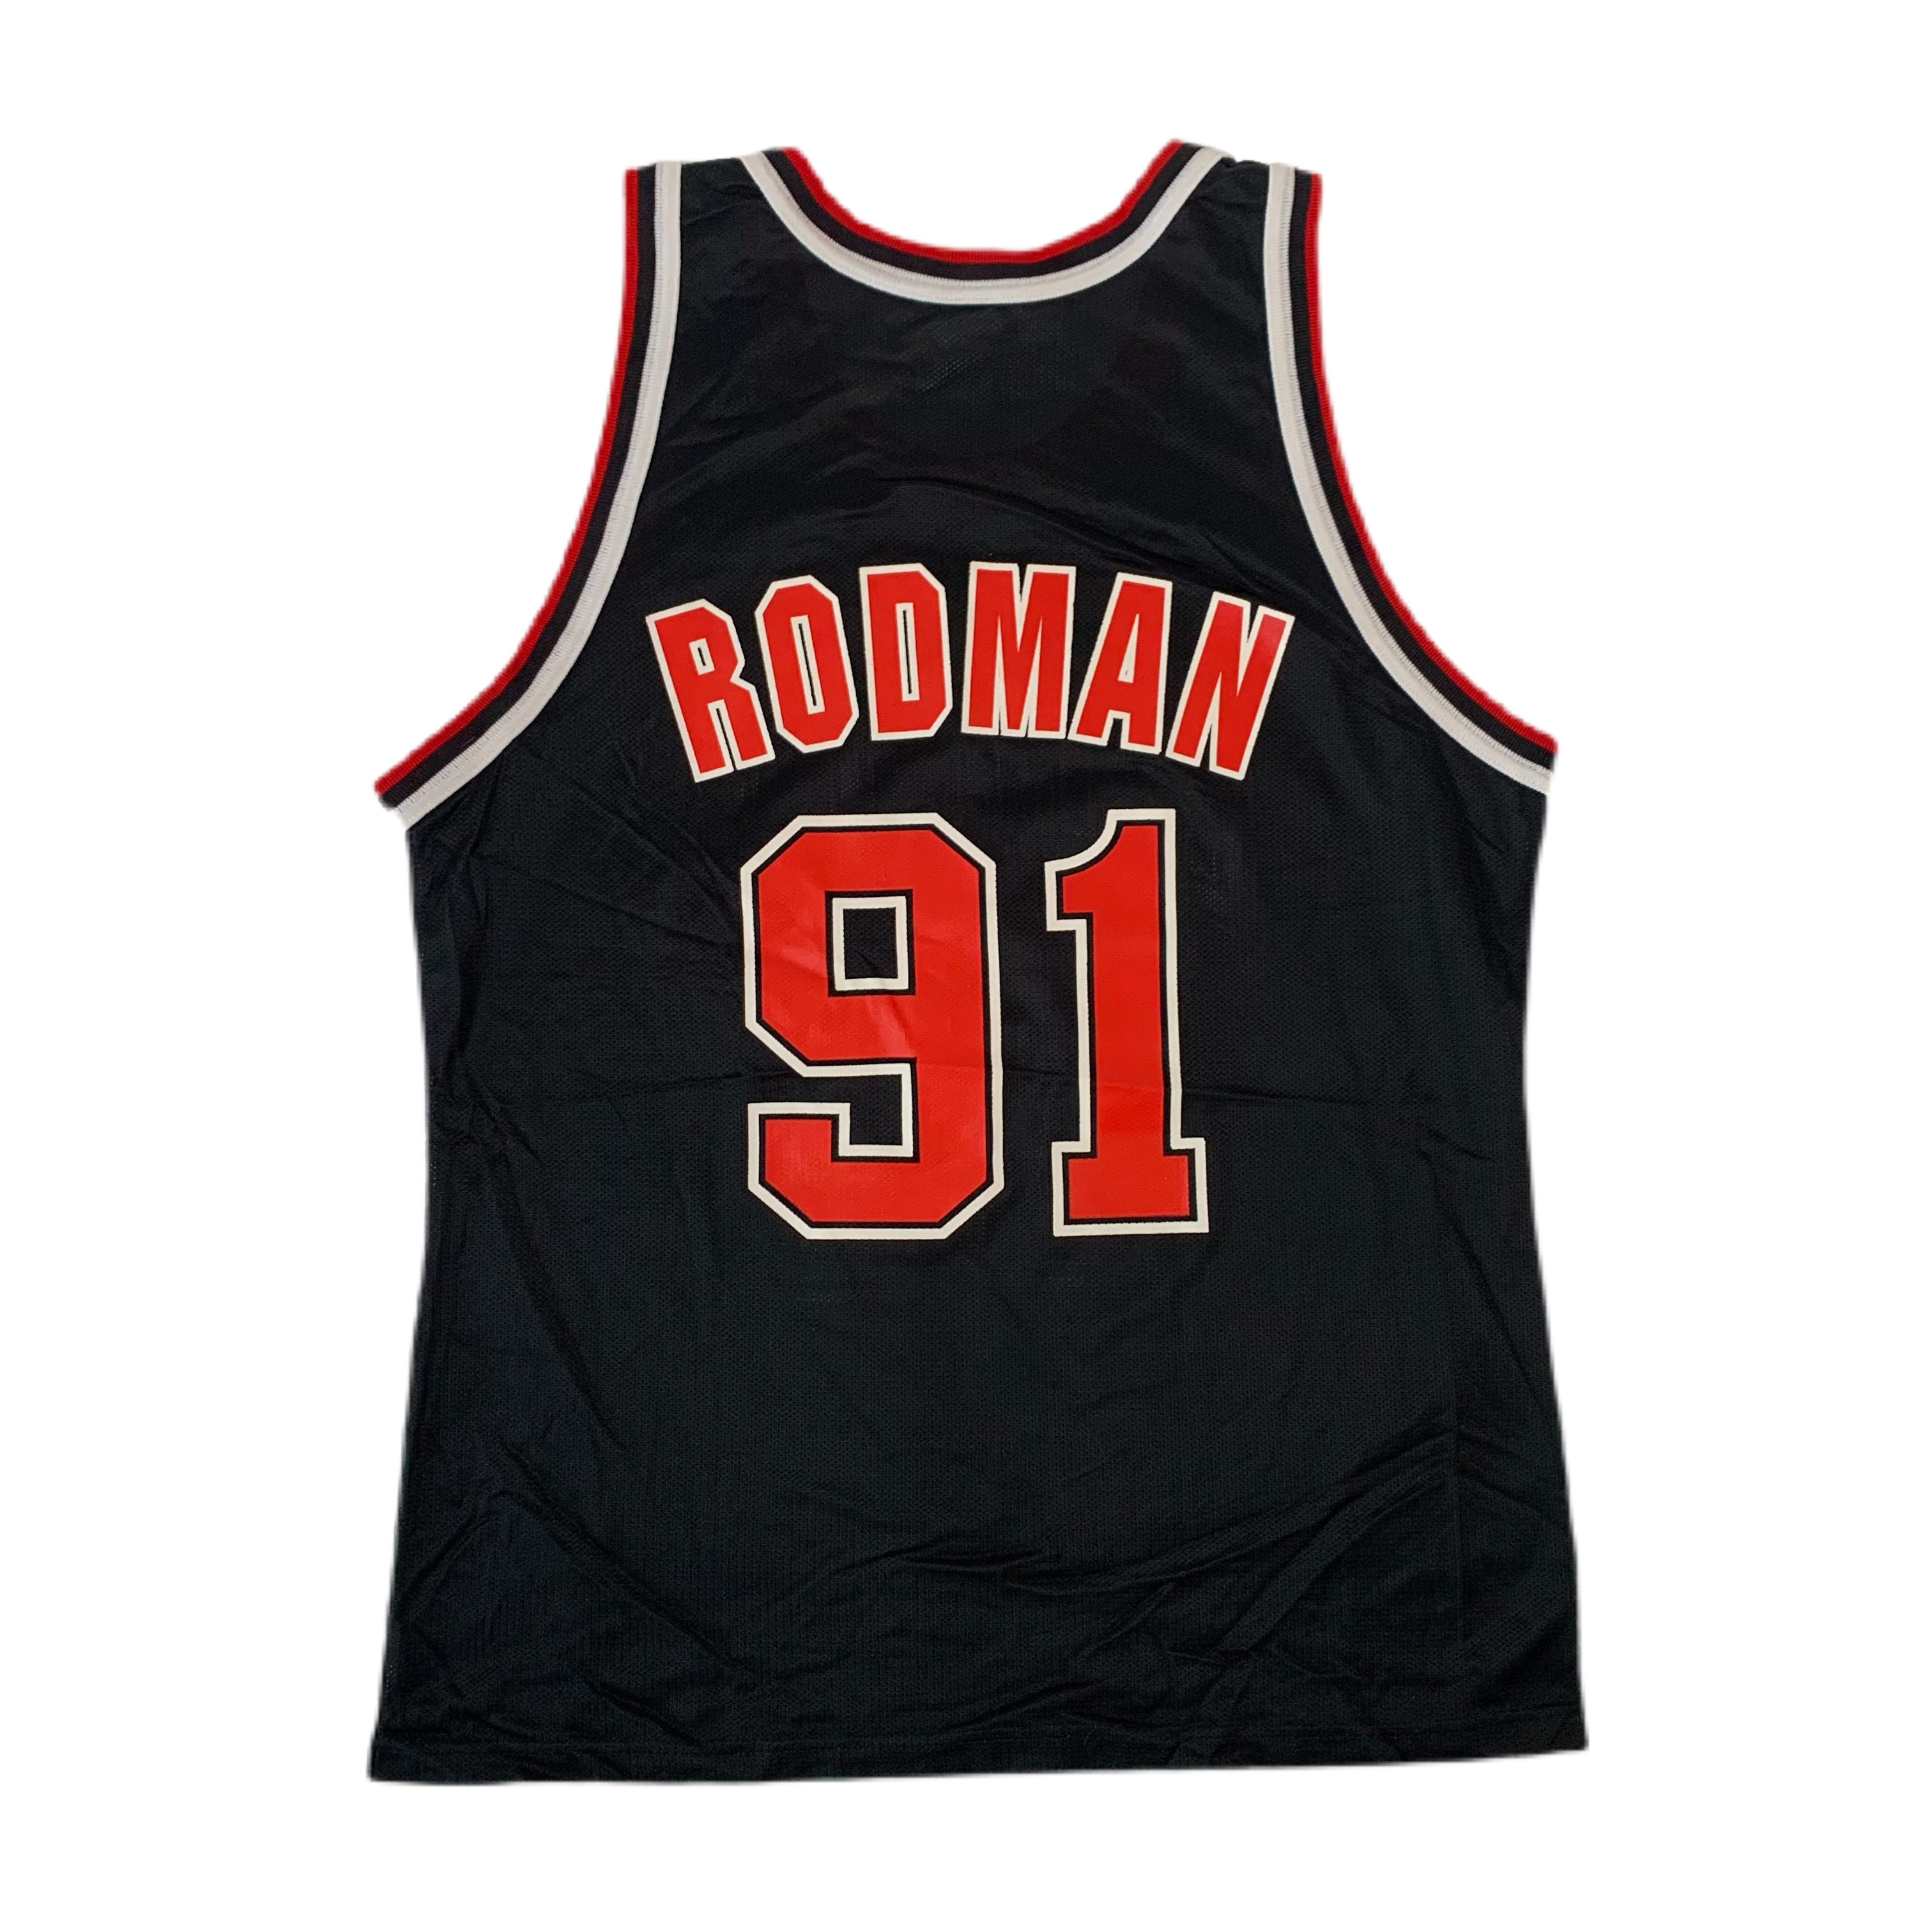 Dennis Rodman Bulls Throwback Black Jersey Large